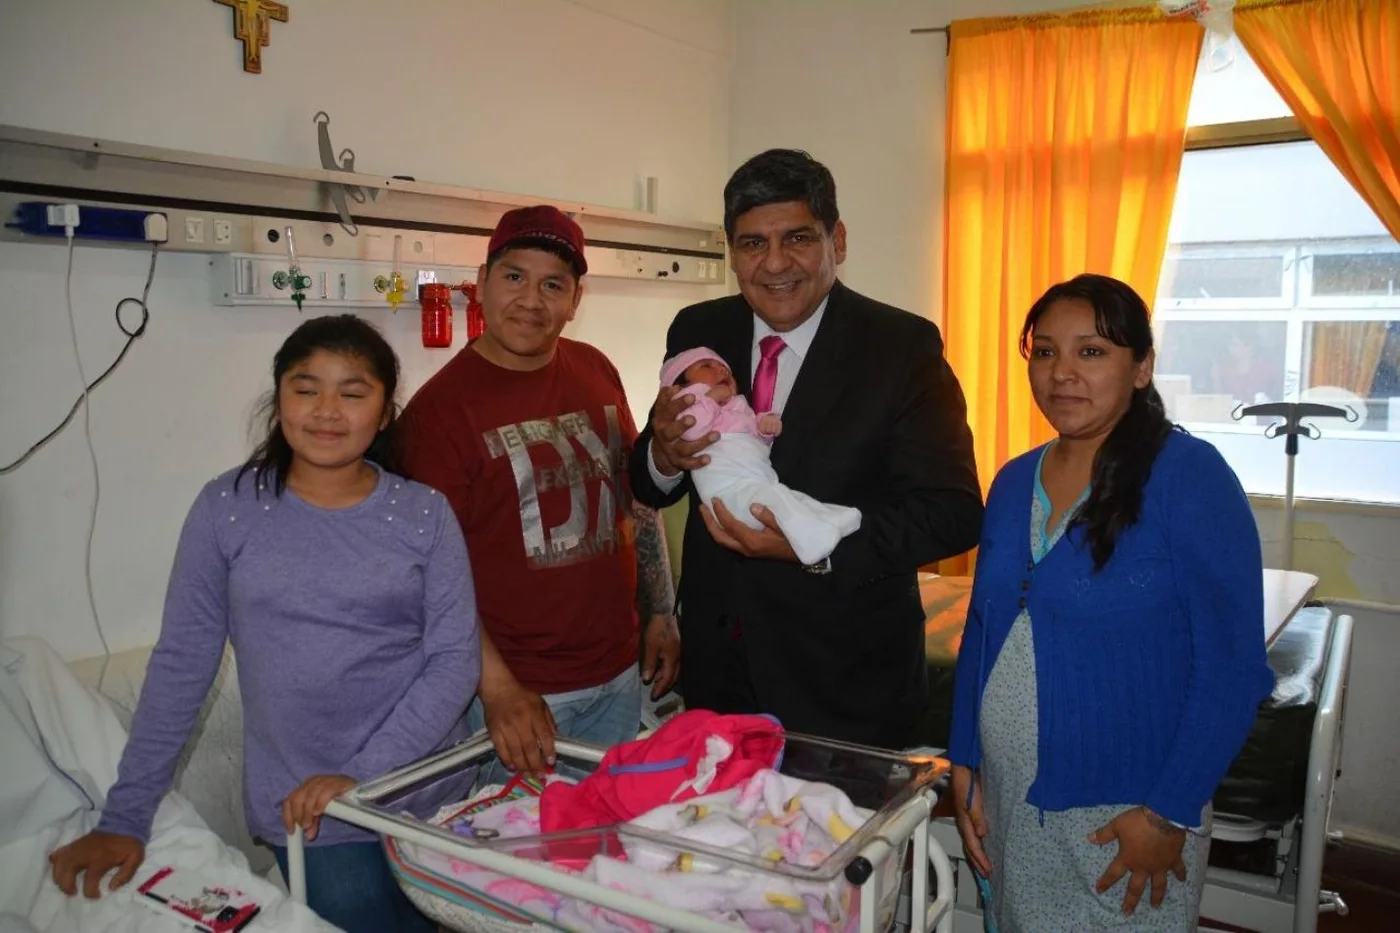 El vicegobernador Juan Carlos Arcando visitó este miércoles los hospitales regionales de Ushuaia y Río Grande donde hizo entrega de regalos